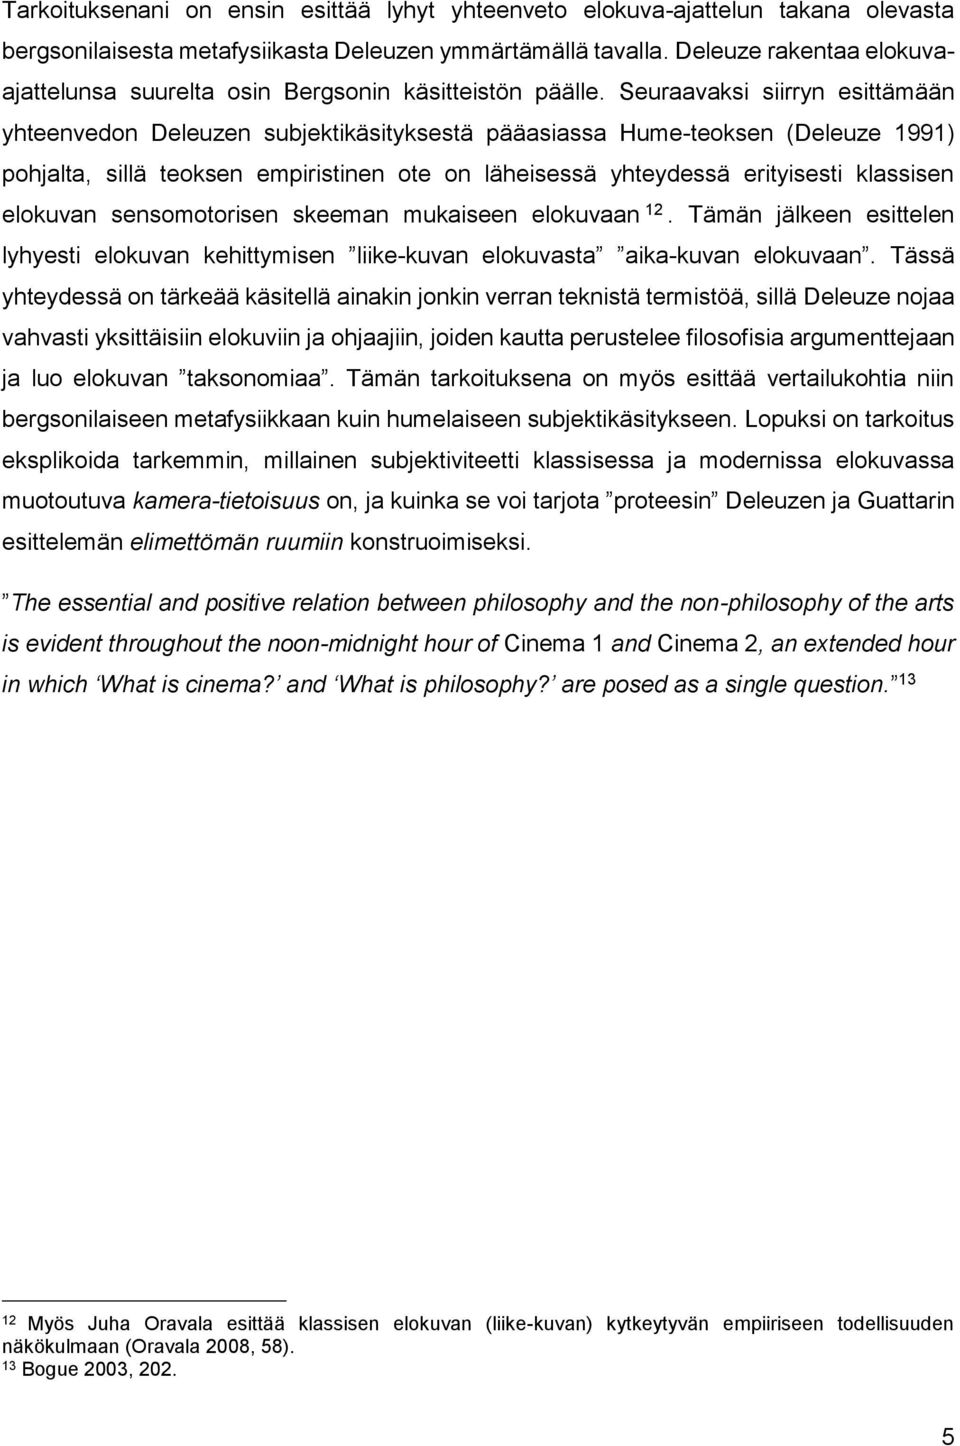 Seuraavaksi siirryn esittämään yhteenvedon Deleuzen subjektikäsityksestä pääasiassa Hume-teoksen (Deleuze 1991) pohjalta, sillä teoksen empiristinen ote on läheisessä yhteydessä erityisesti klassisen